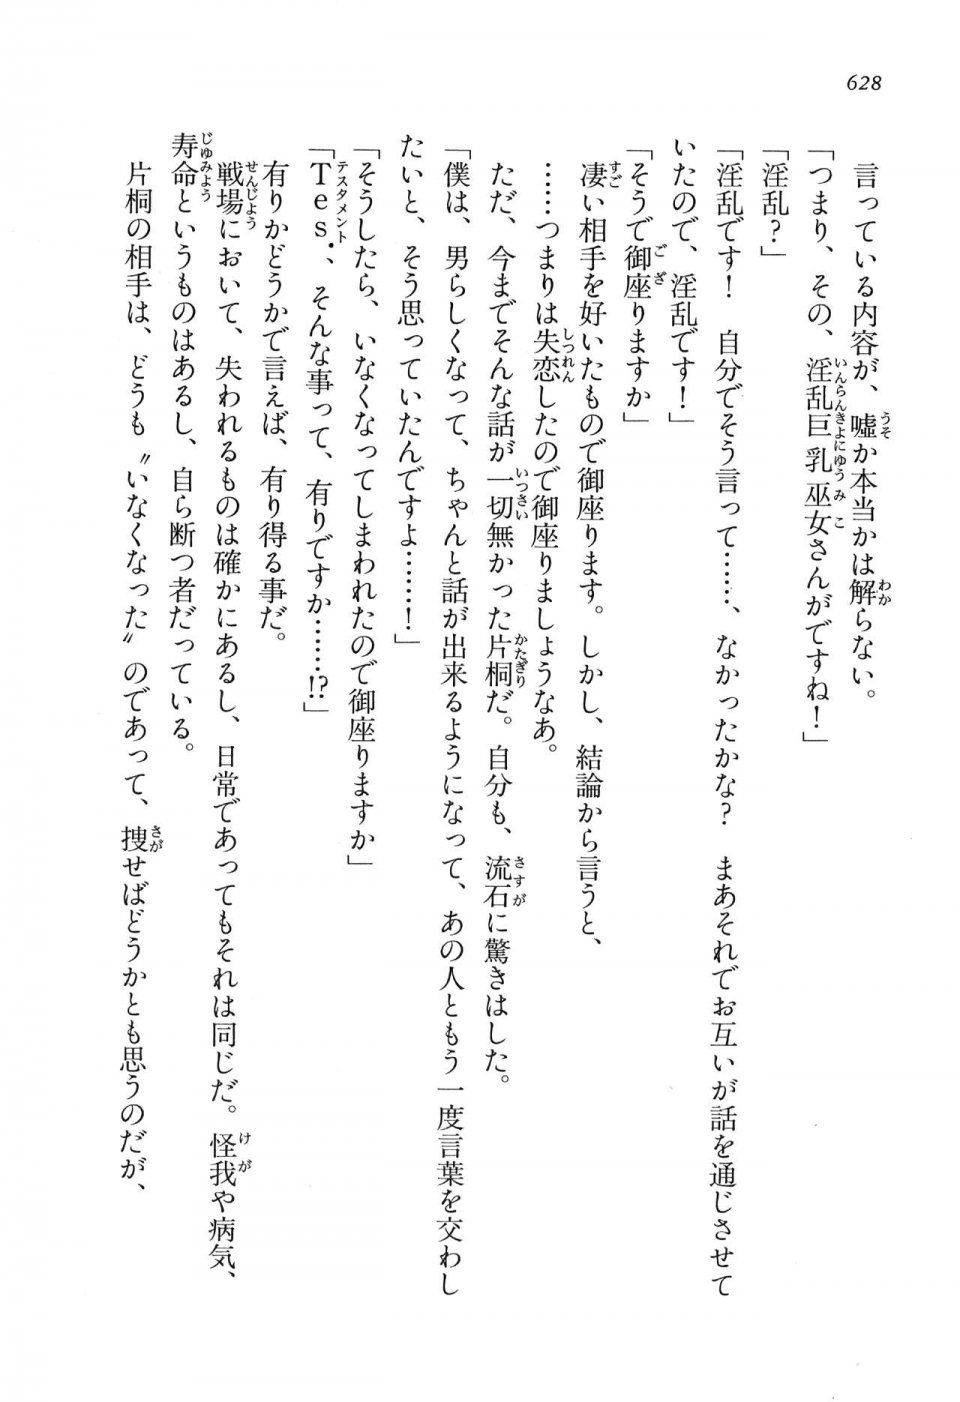 Kyoukai Senjou no Horizon LN Vol 16(7A) - Photo #628